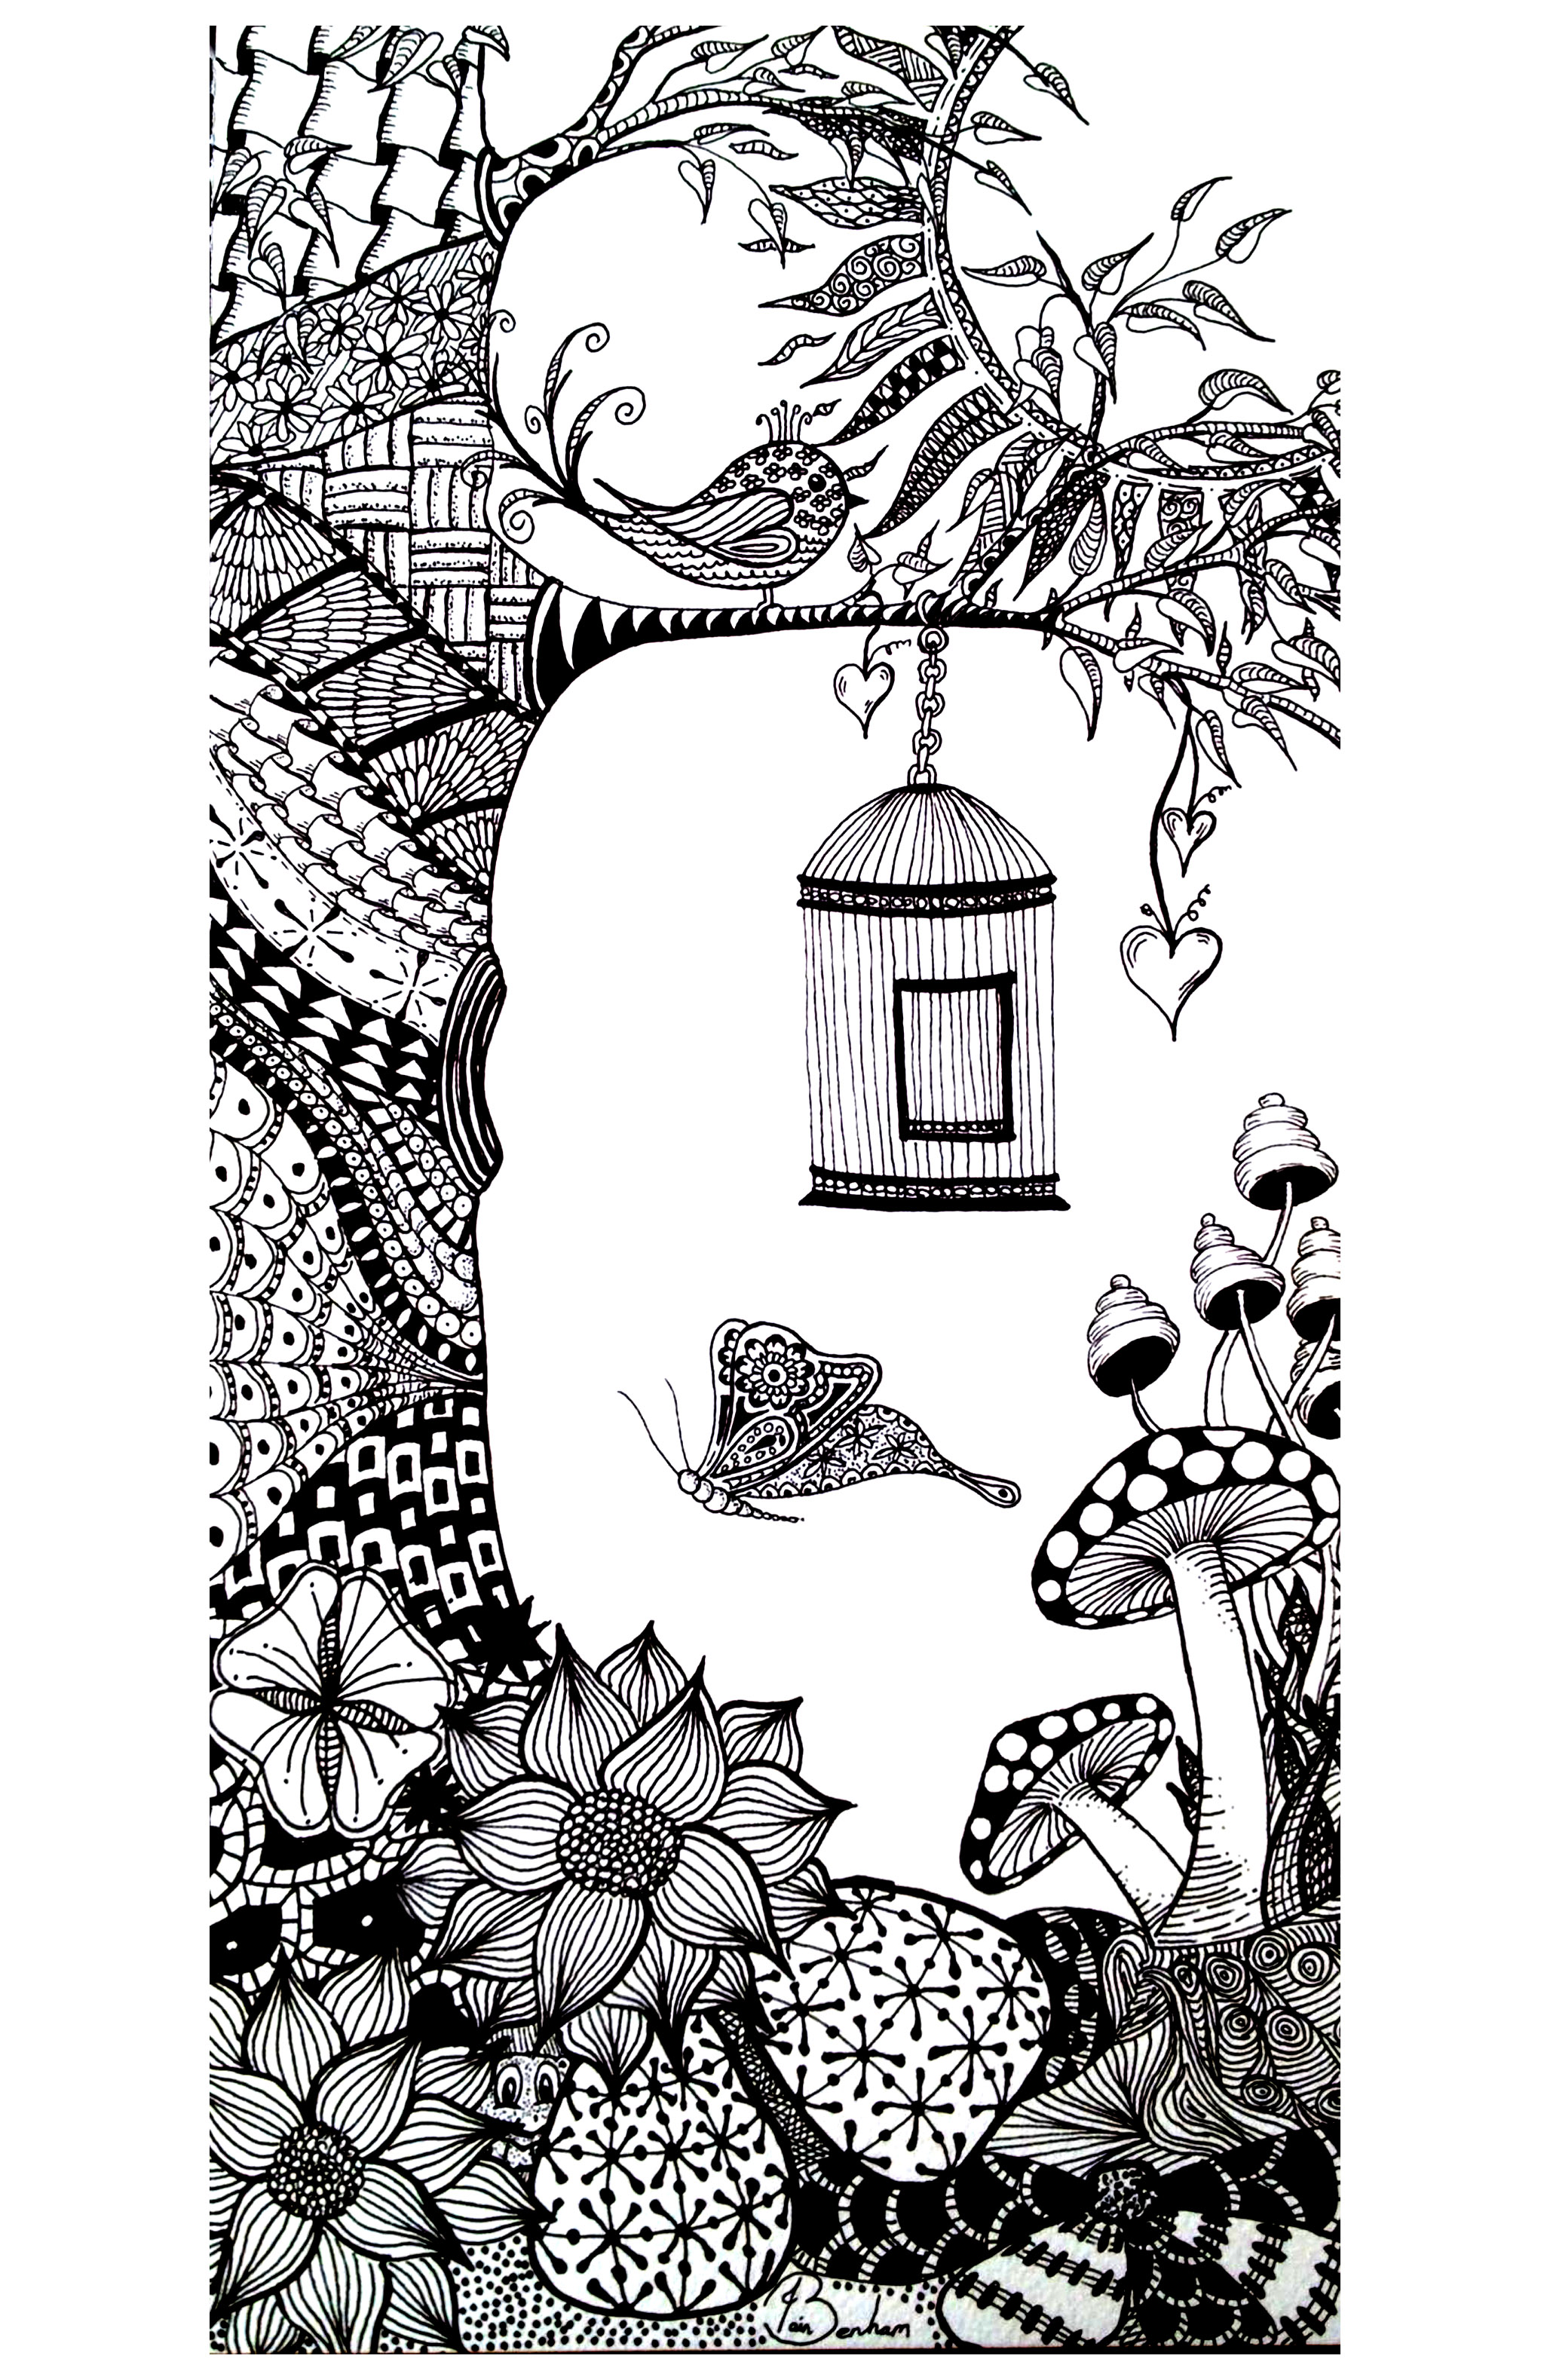 Dessin à colorier avec un arbre, un oiseau, des papillons ... De jolis motifs Zentangle à colorier